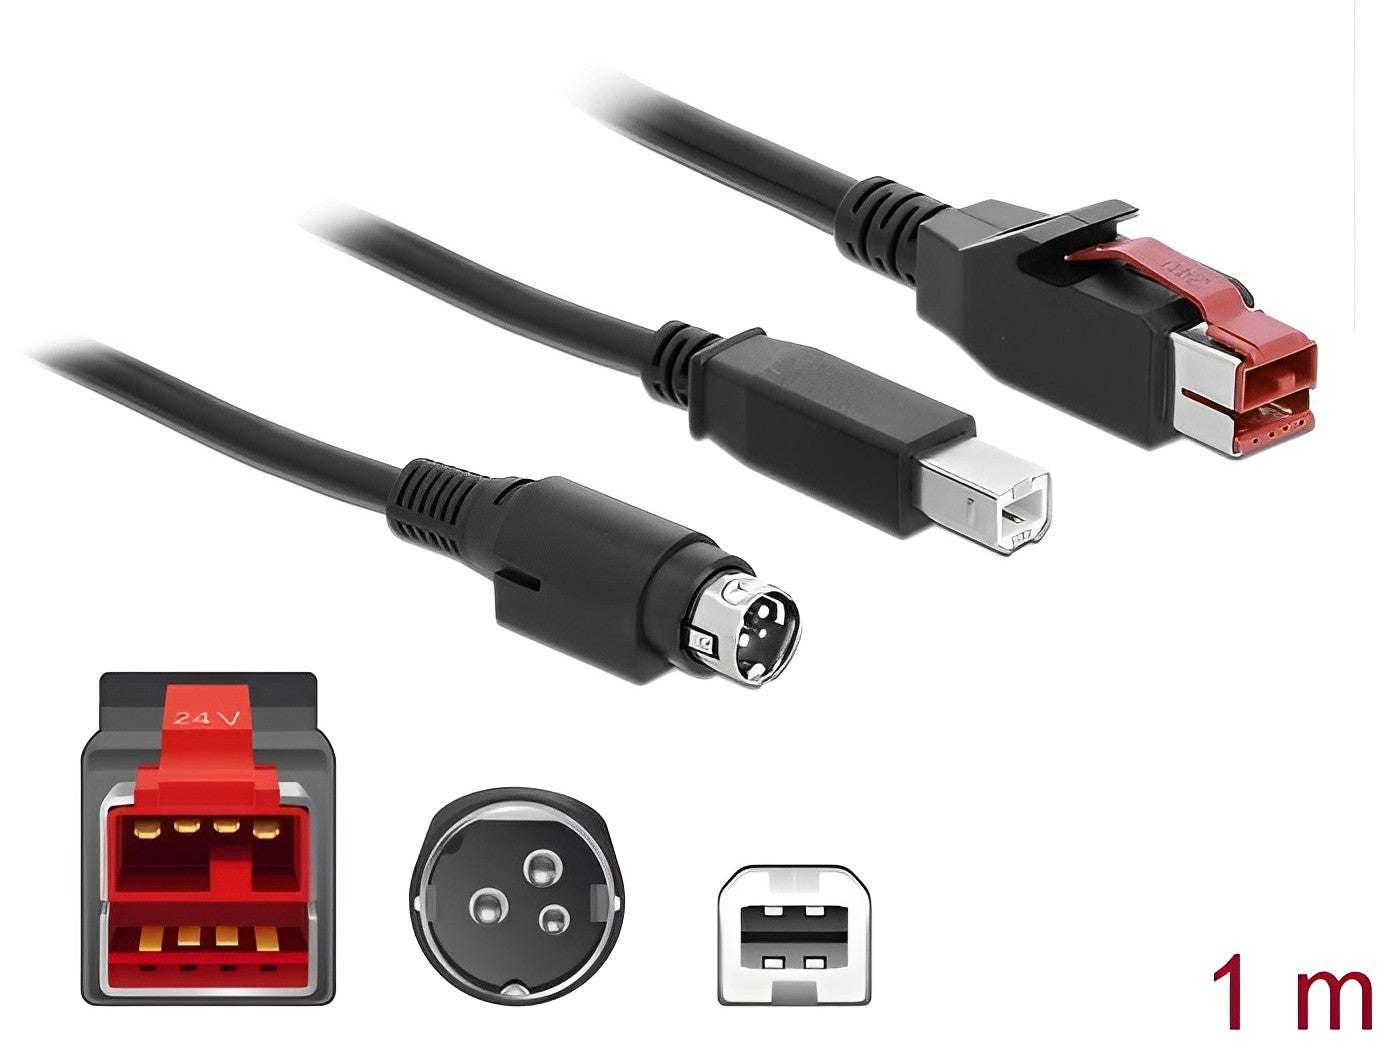 כבל USB עבור מדפסות קופה ומסופים תקע PoweredUSB 24V לתקע USB Type-B + Hosiden Mini-DIN 3 pin - delock.israel